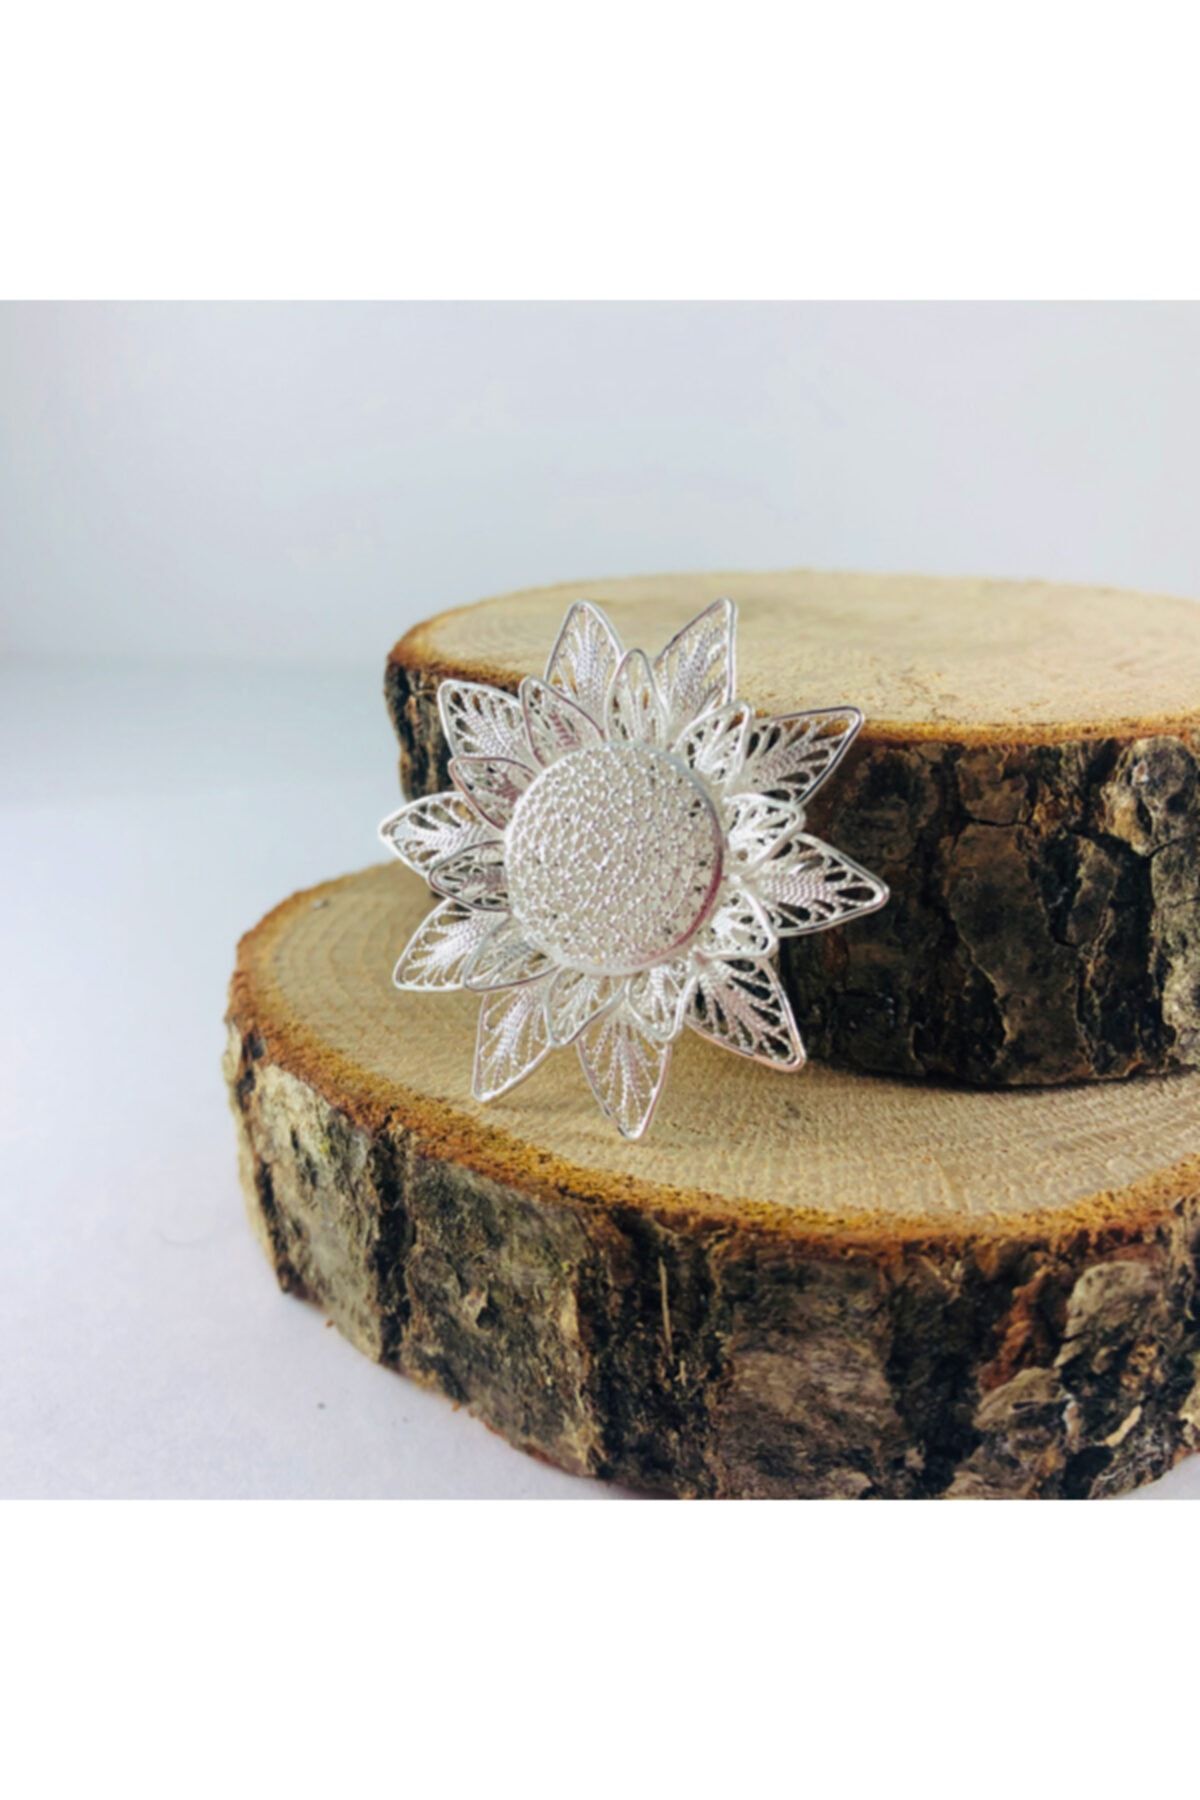 Sungurbey Gümüş Dünyası Çiçek Işlemeli Telkari El Sanatı Gümüş Broş